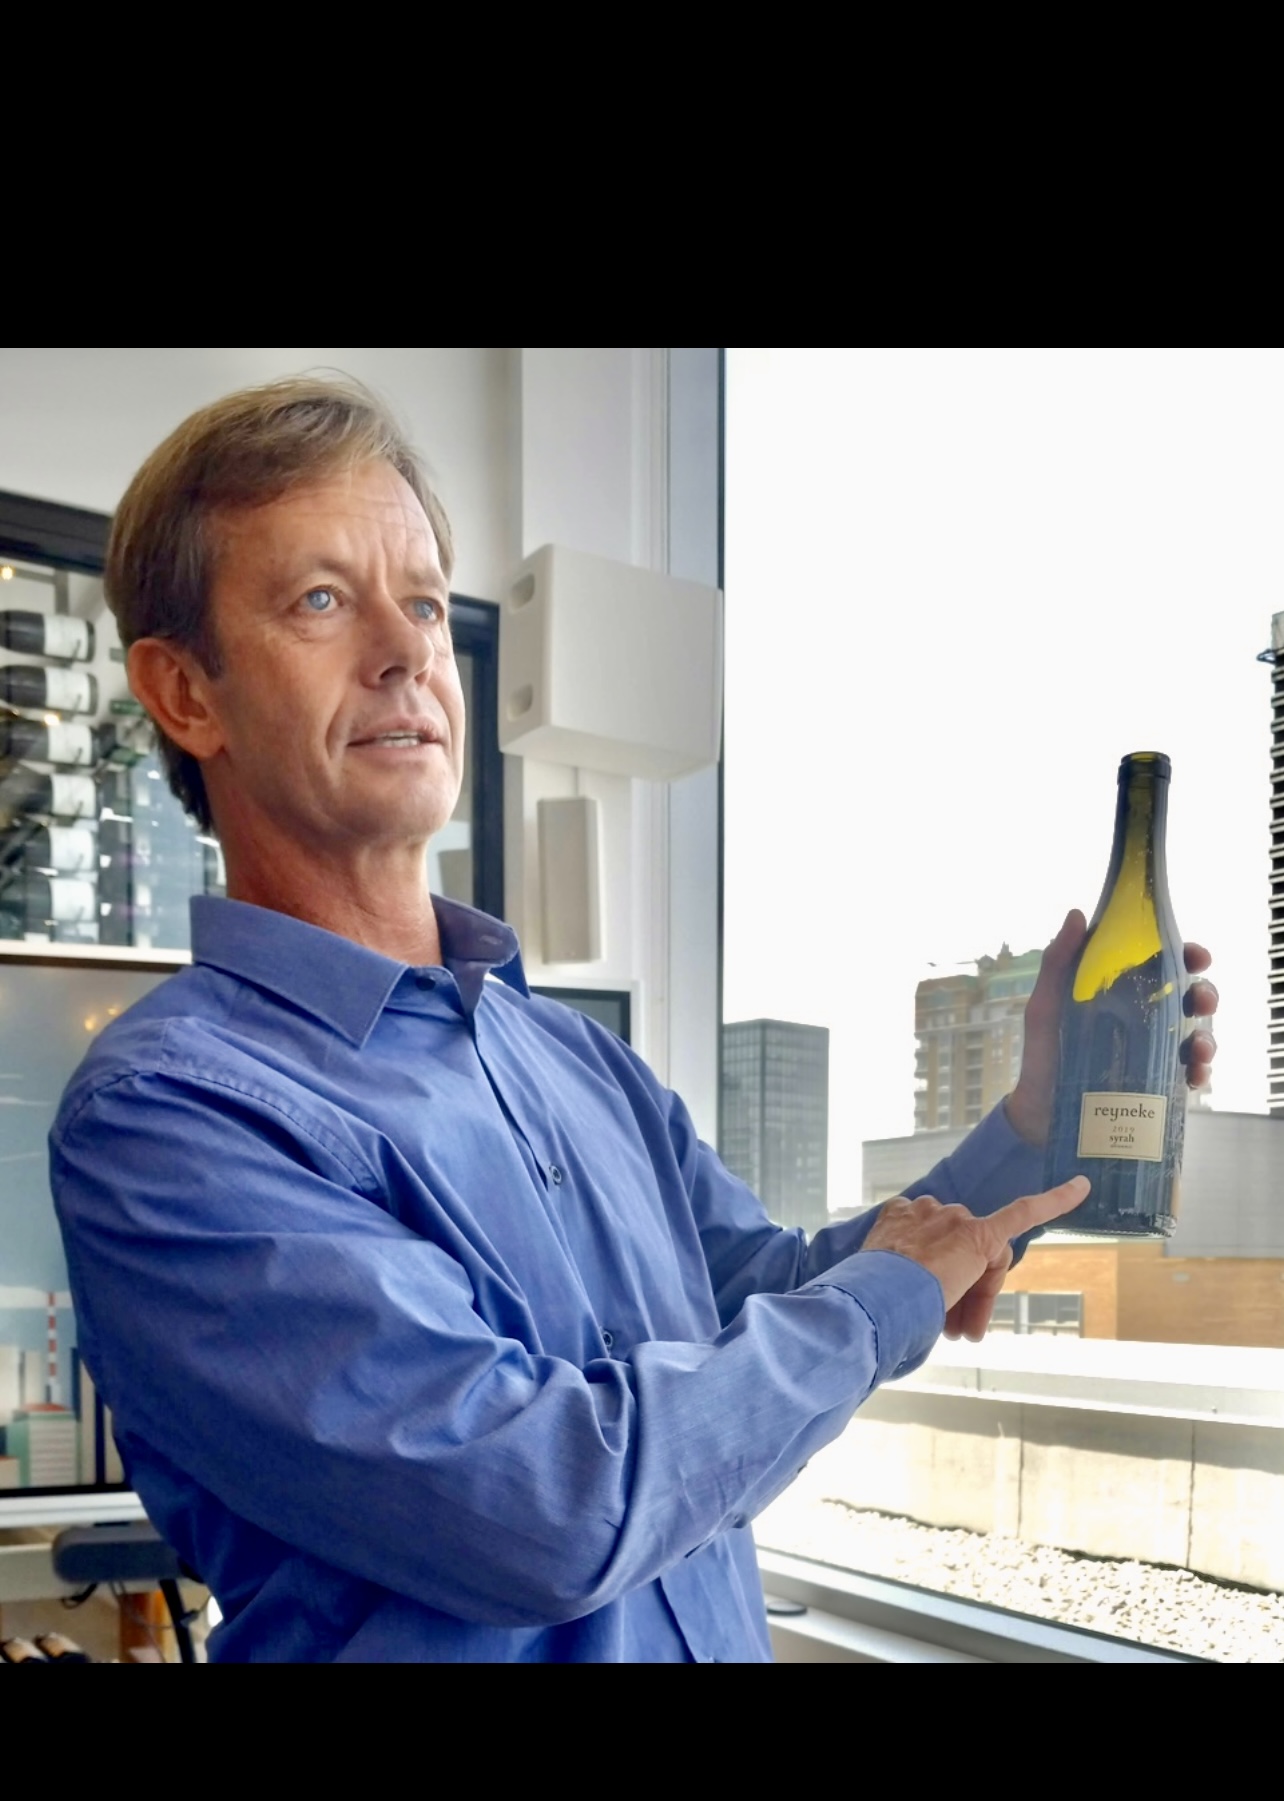 Un homme tenant une bouteille de vin Reyneke devant une fenêtre.